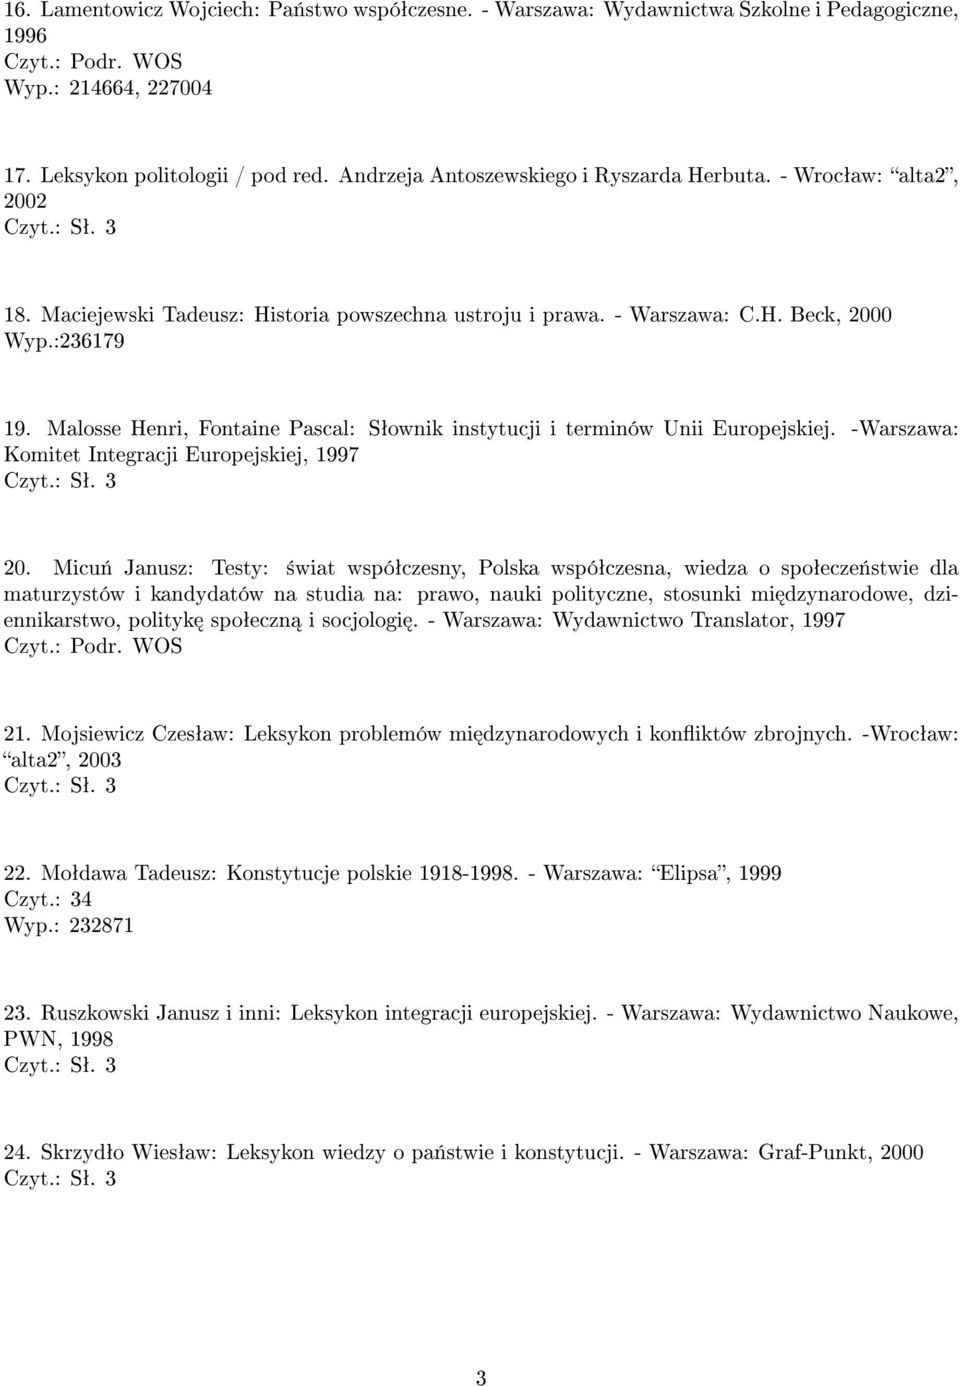 Malosse Henri, Fontaine Pascal: Sªownik instytucji i terminów Unii Europejskiej. -Warszawa: Komitet Integracji Europejskiej, 1997 20.